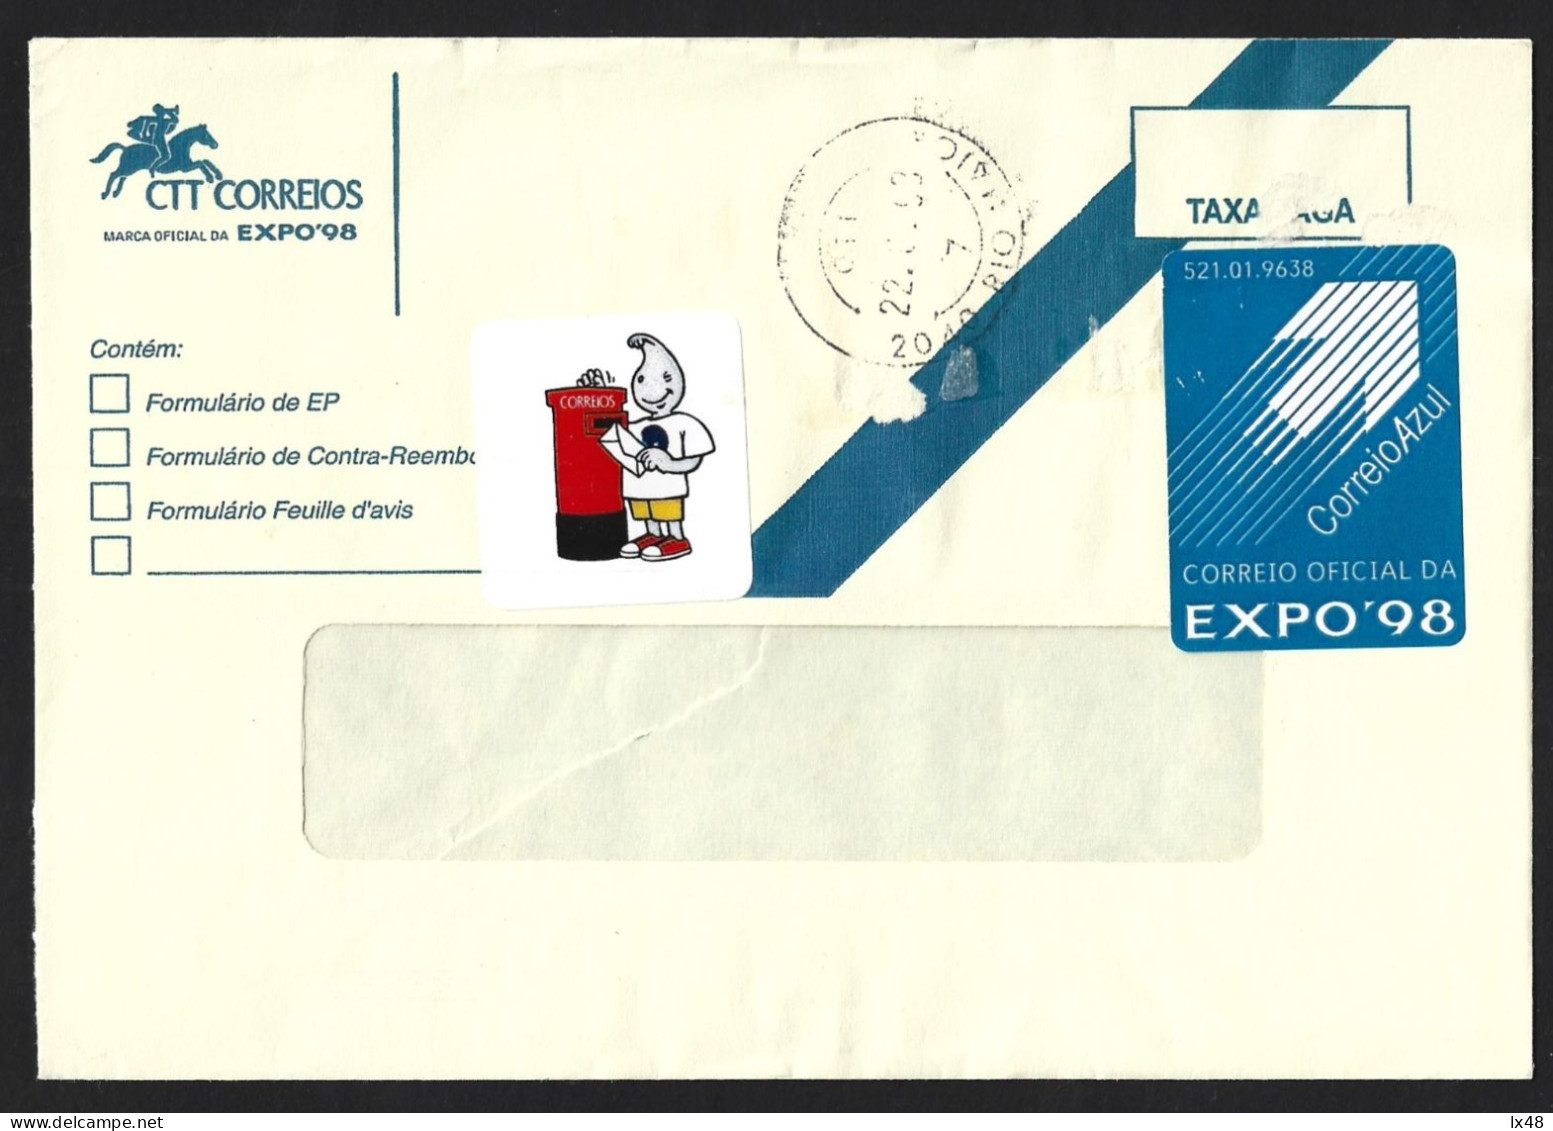 Carta Expedida Da EXPO 98 Com Vinheta Do Gil E Vinheta De Correio Azul. Letter Sent EXPO 98 With Sticker From Gil. - Cartas & Documentos